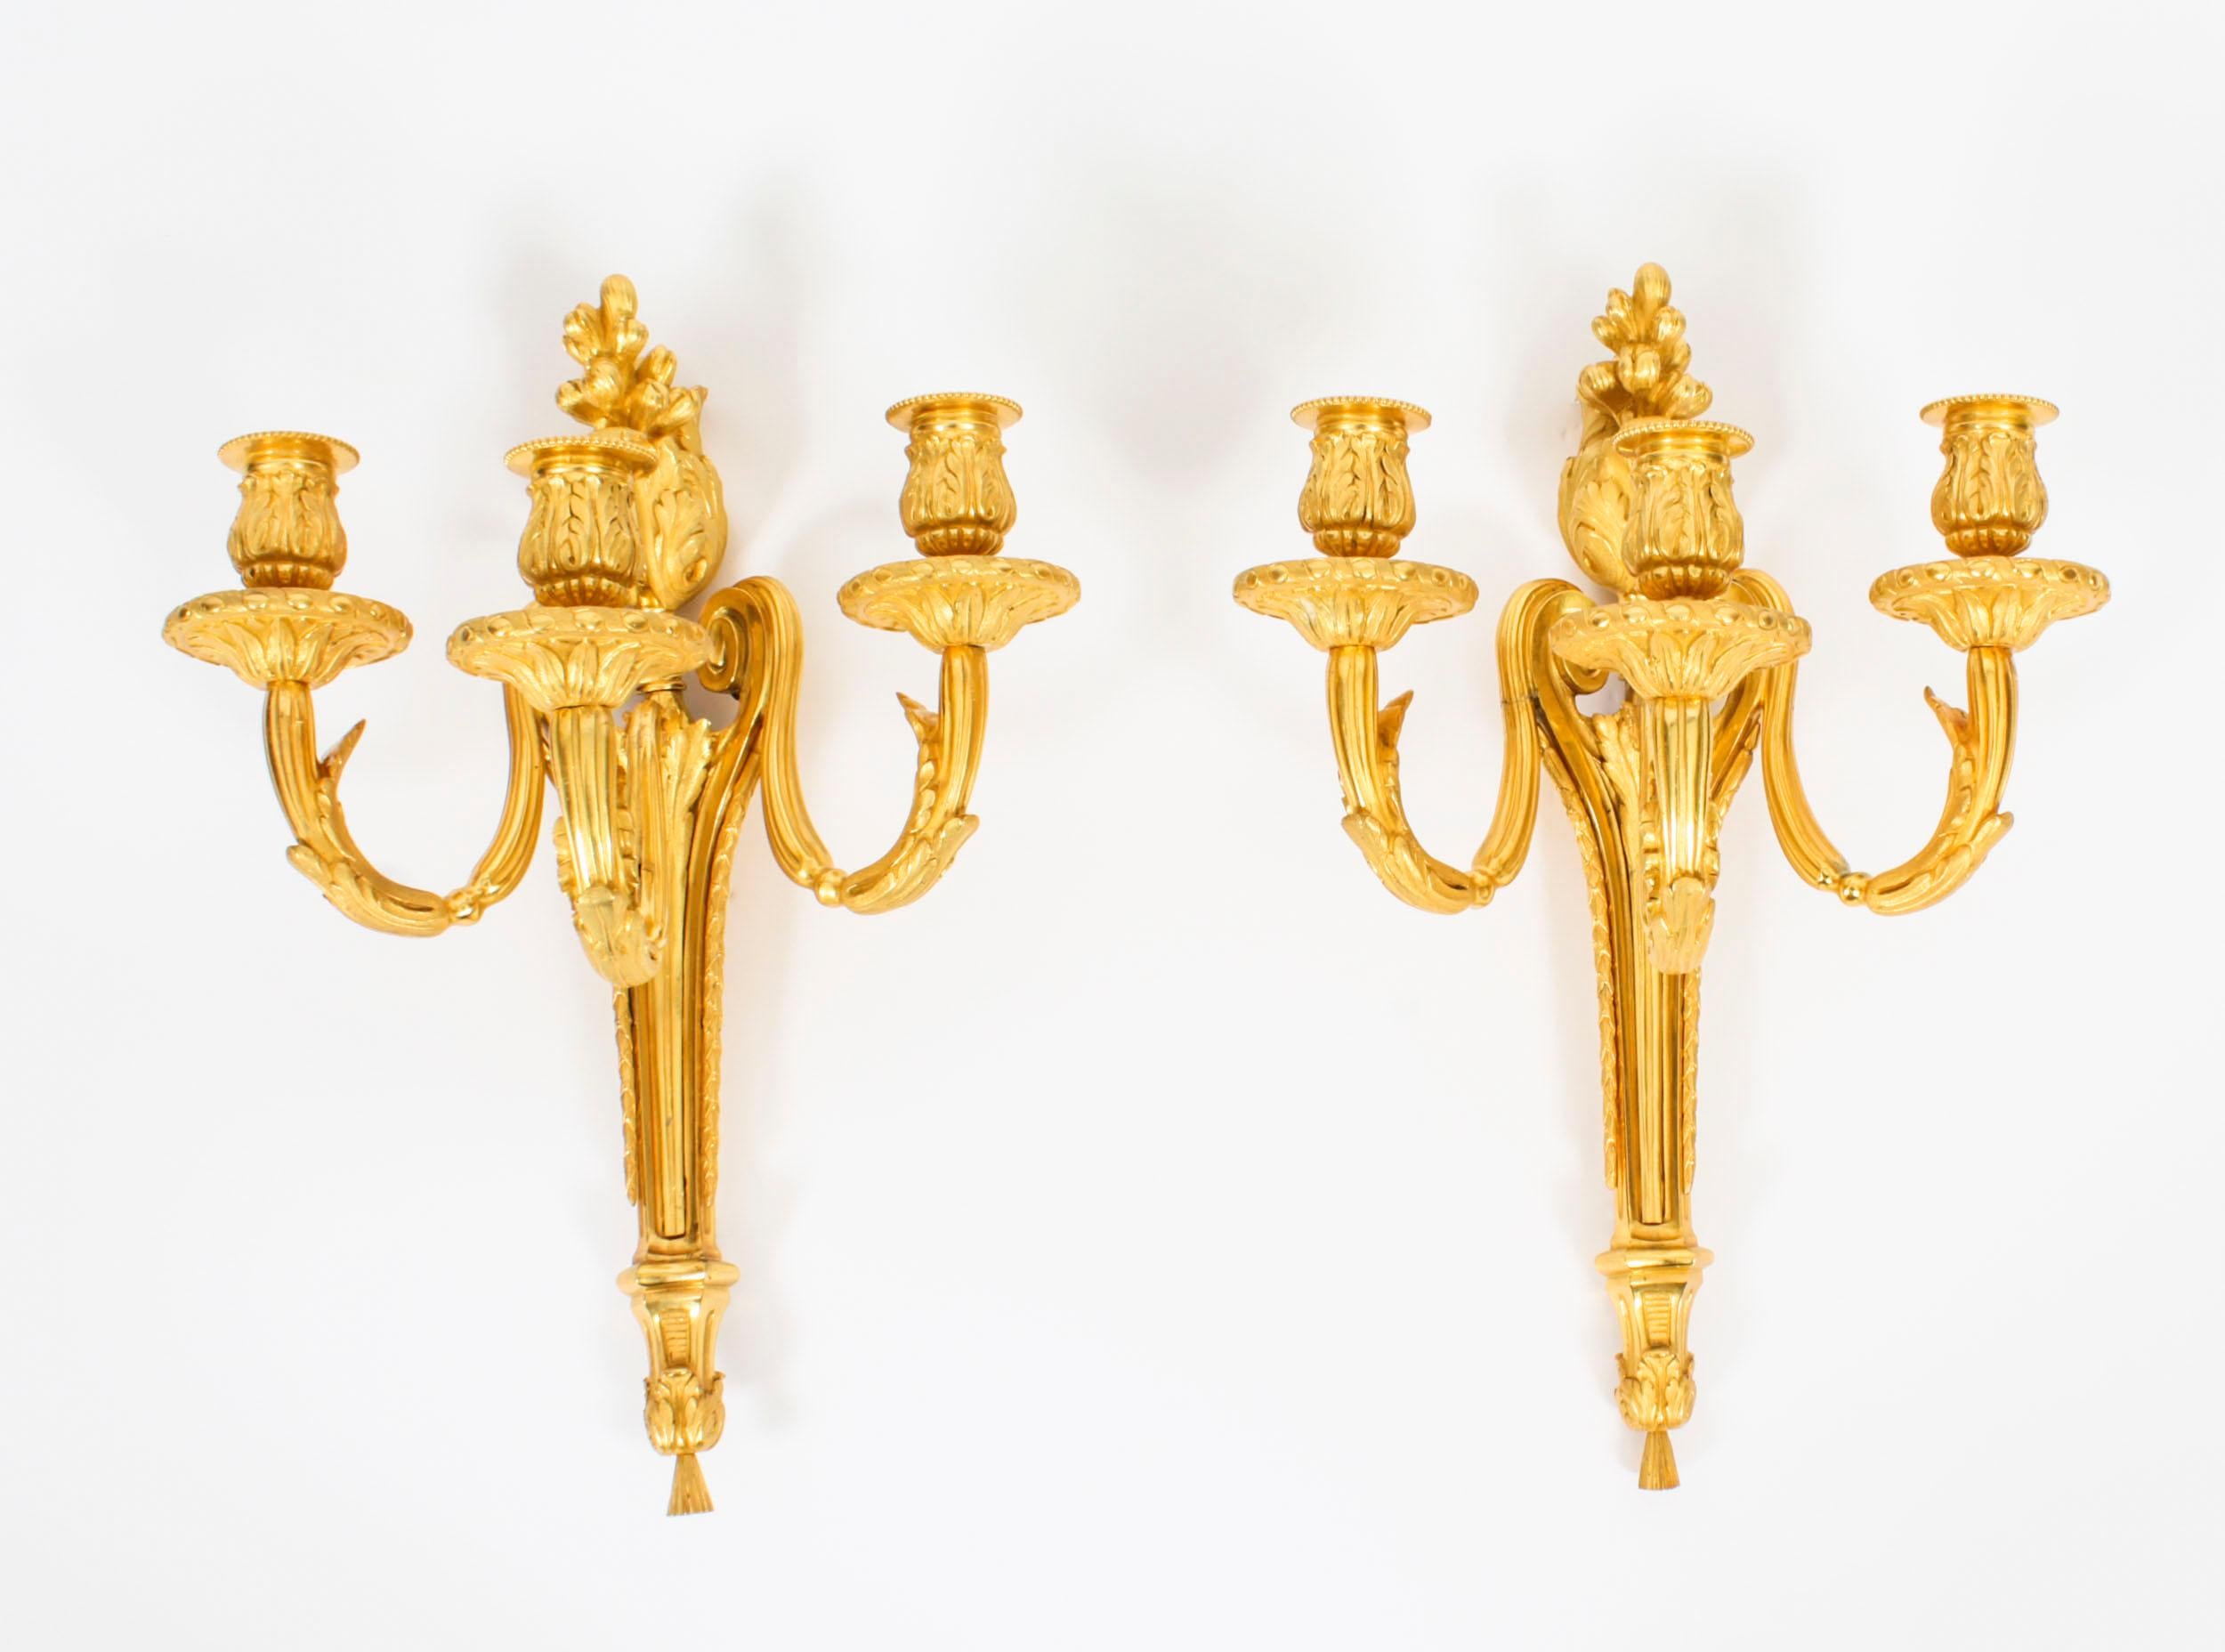 Dies ist ein atemberaubendes Paar von Adam Revival antiken vergoldeten Ormolu dreifachen Zweig Kerze Wandleuchten, aus dem CIRCA 1840.

Jede Wandleuchte hat einen sich verjüngenden Korpus, der einen spiralförmigen, mit Akanthus verzierten Kandelaber